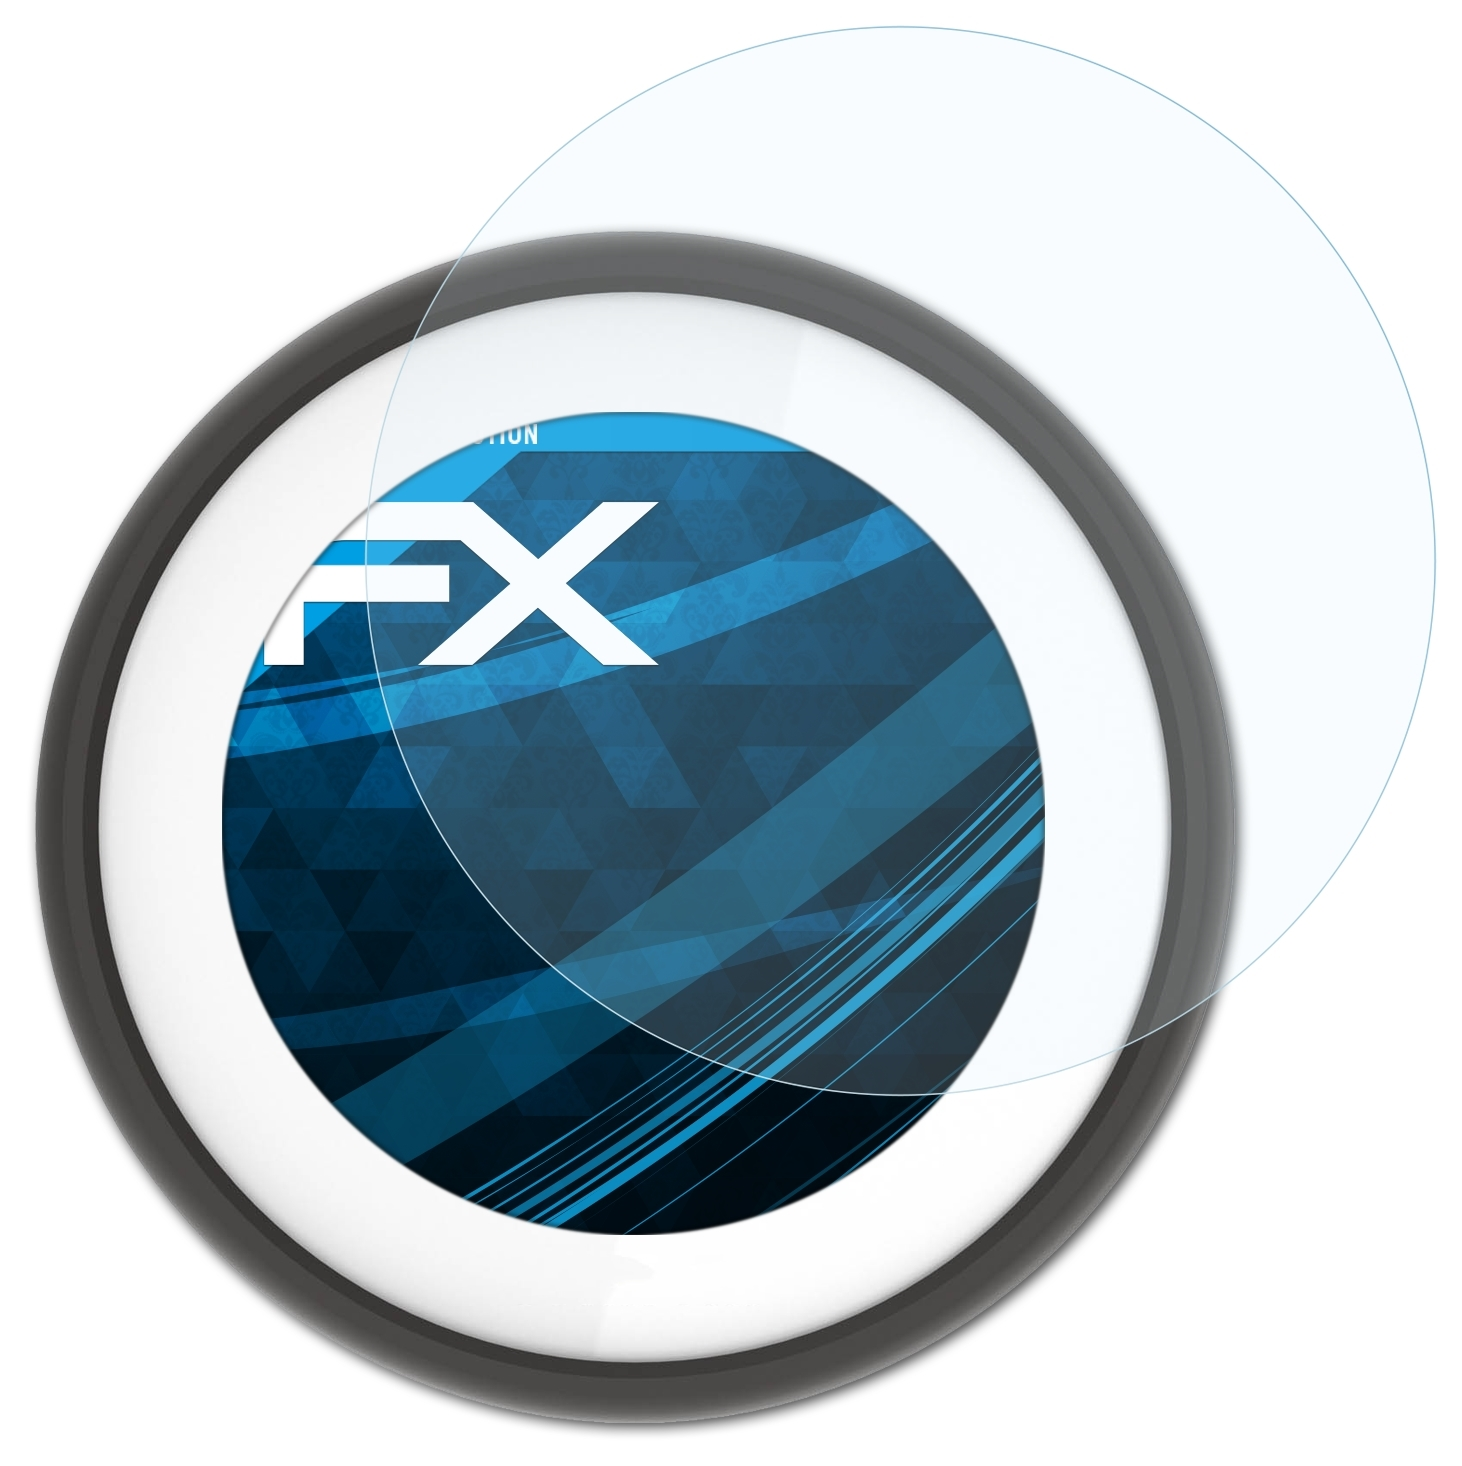 Displayschutz(für 3x Vio) TomTom ATFOLIX FX-Clear